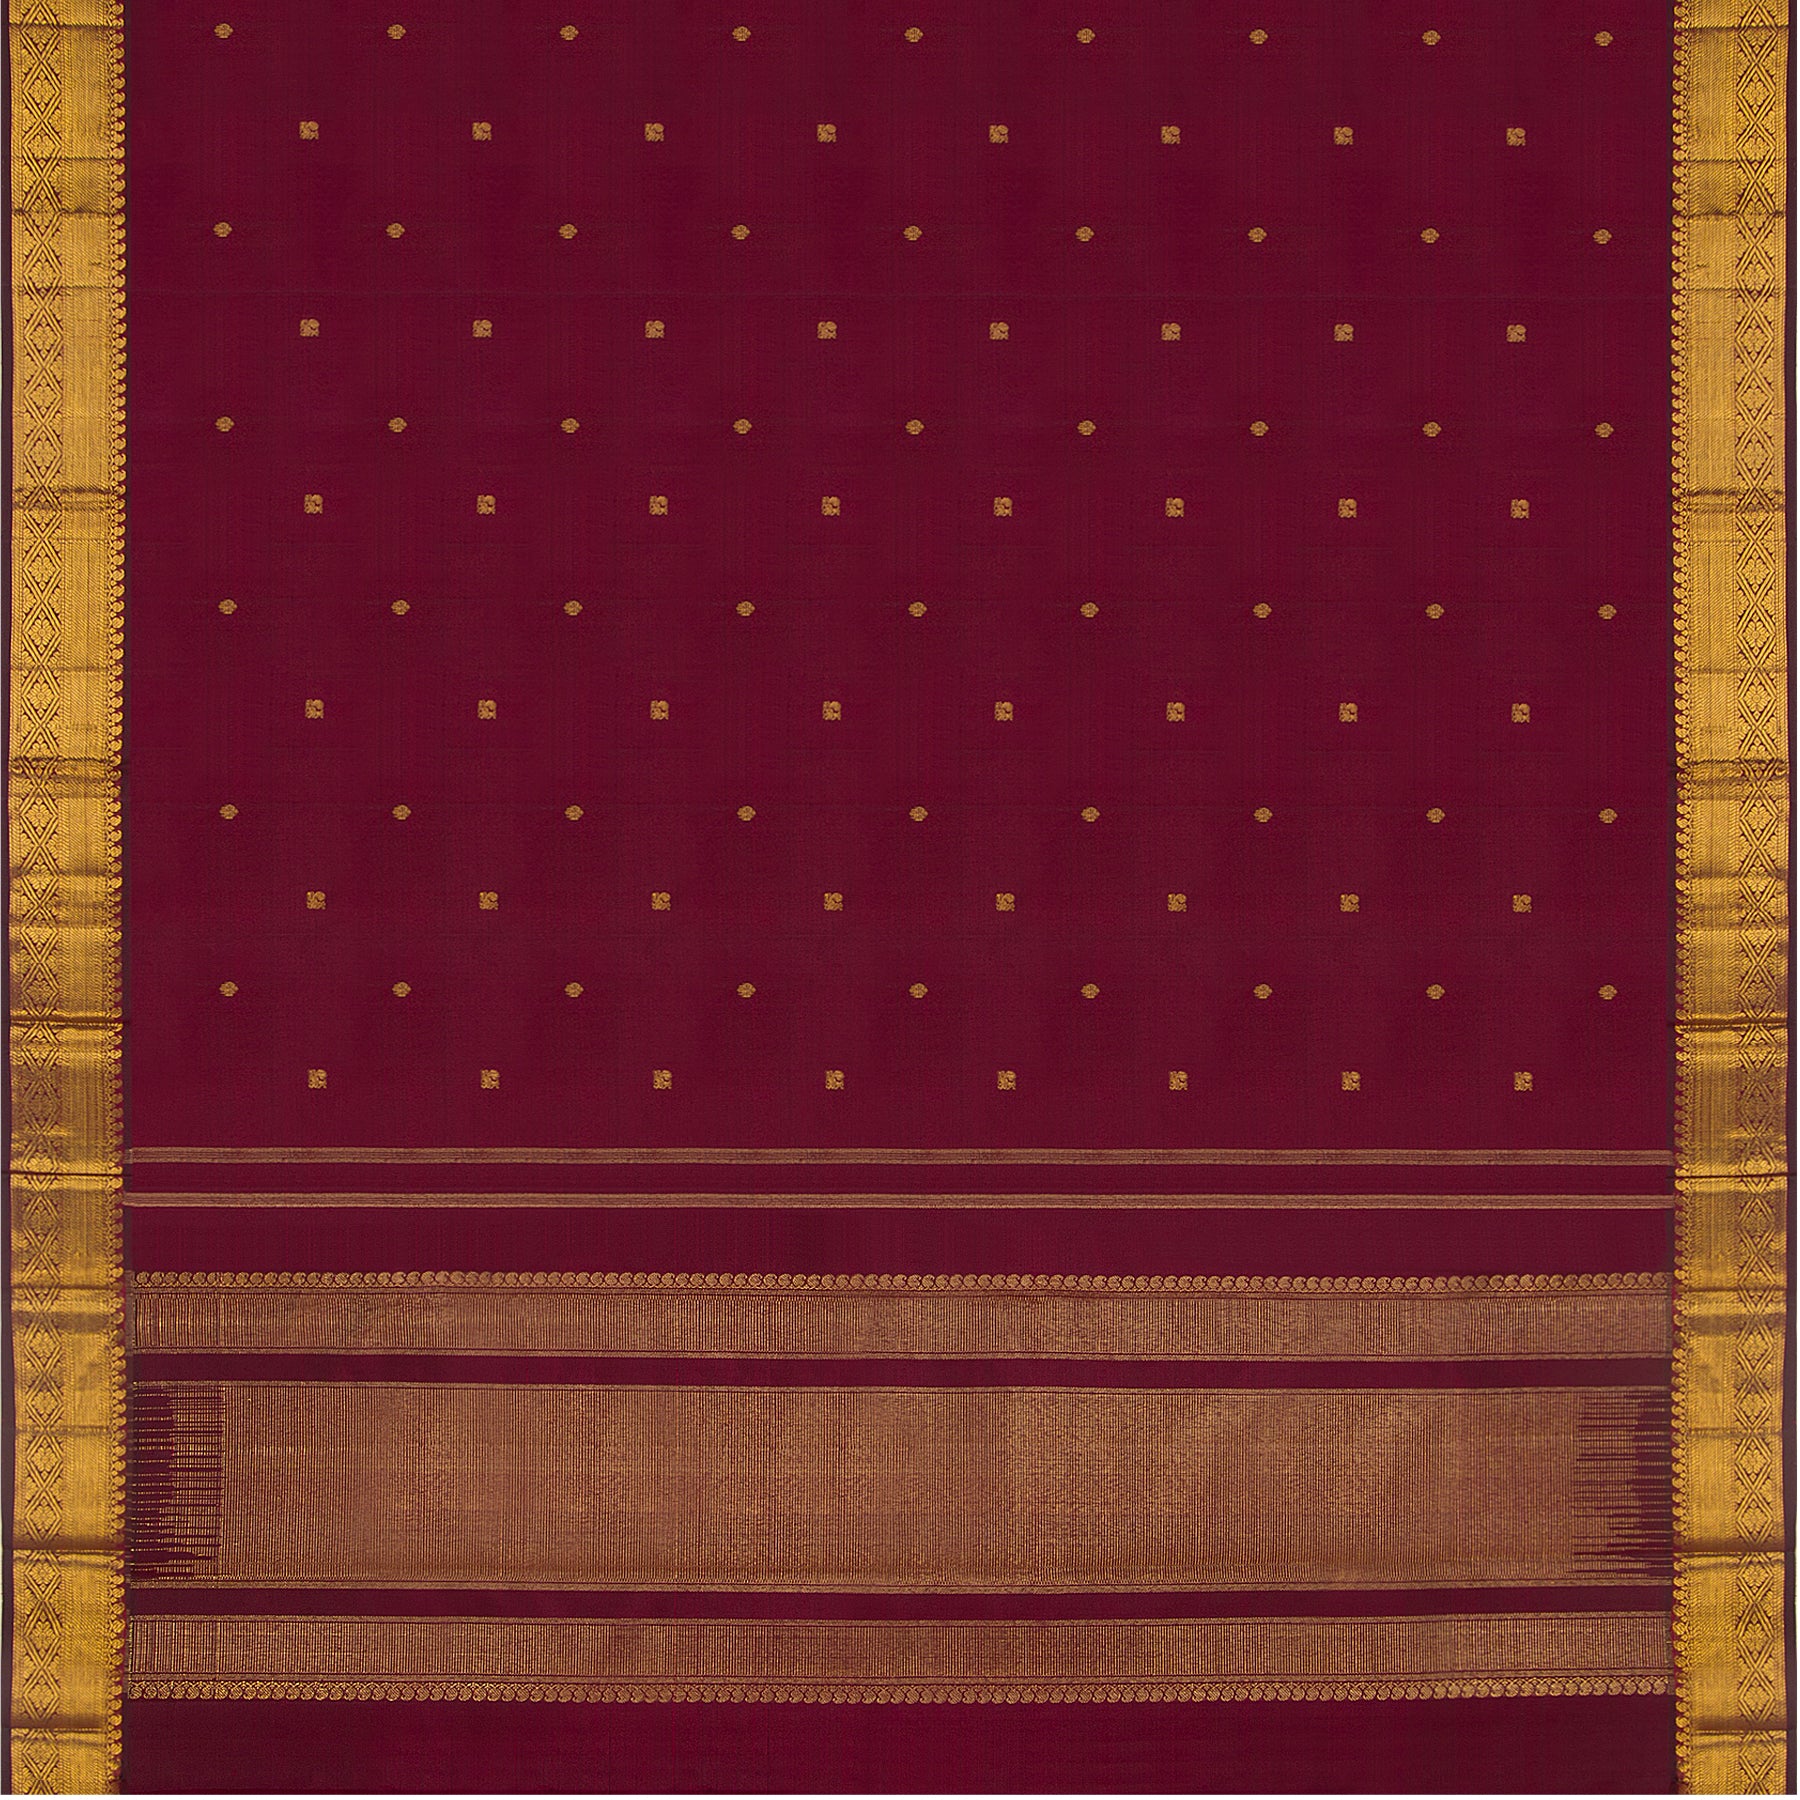 Kanakavalli Kanjivaram Silk Sari 23-611-HS001-14472 - Full View